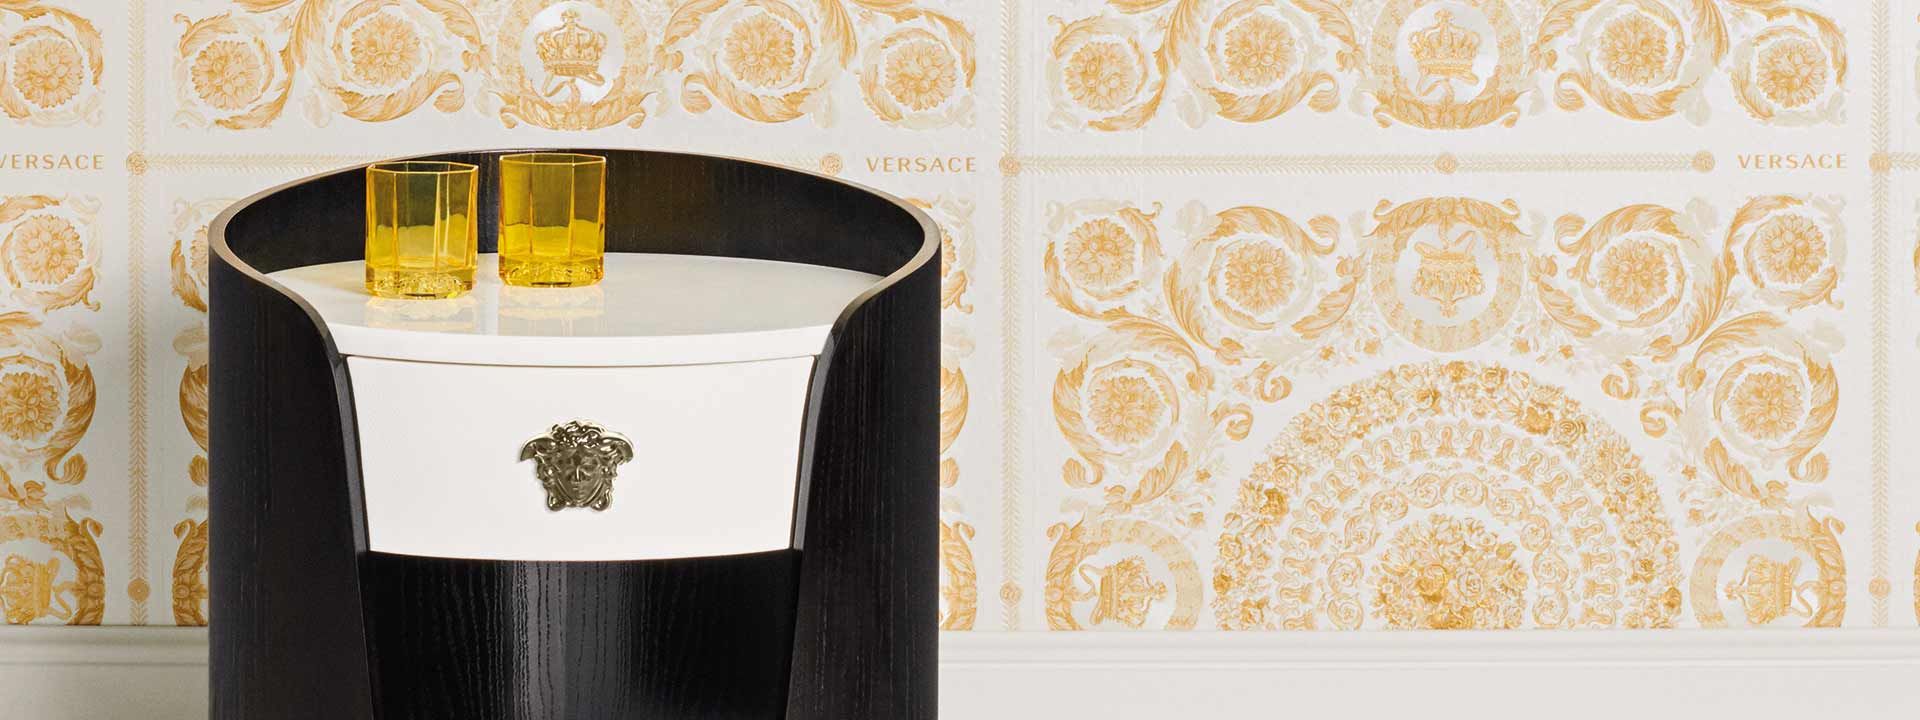 Dreams Pattern - Luxury Versace Pattern with Golden Motifs on